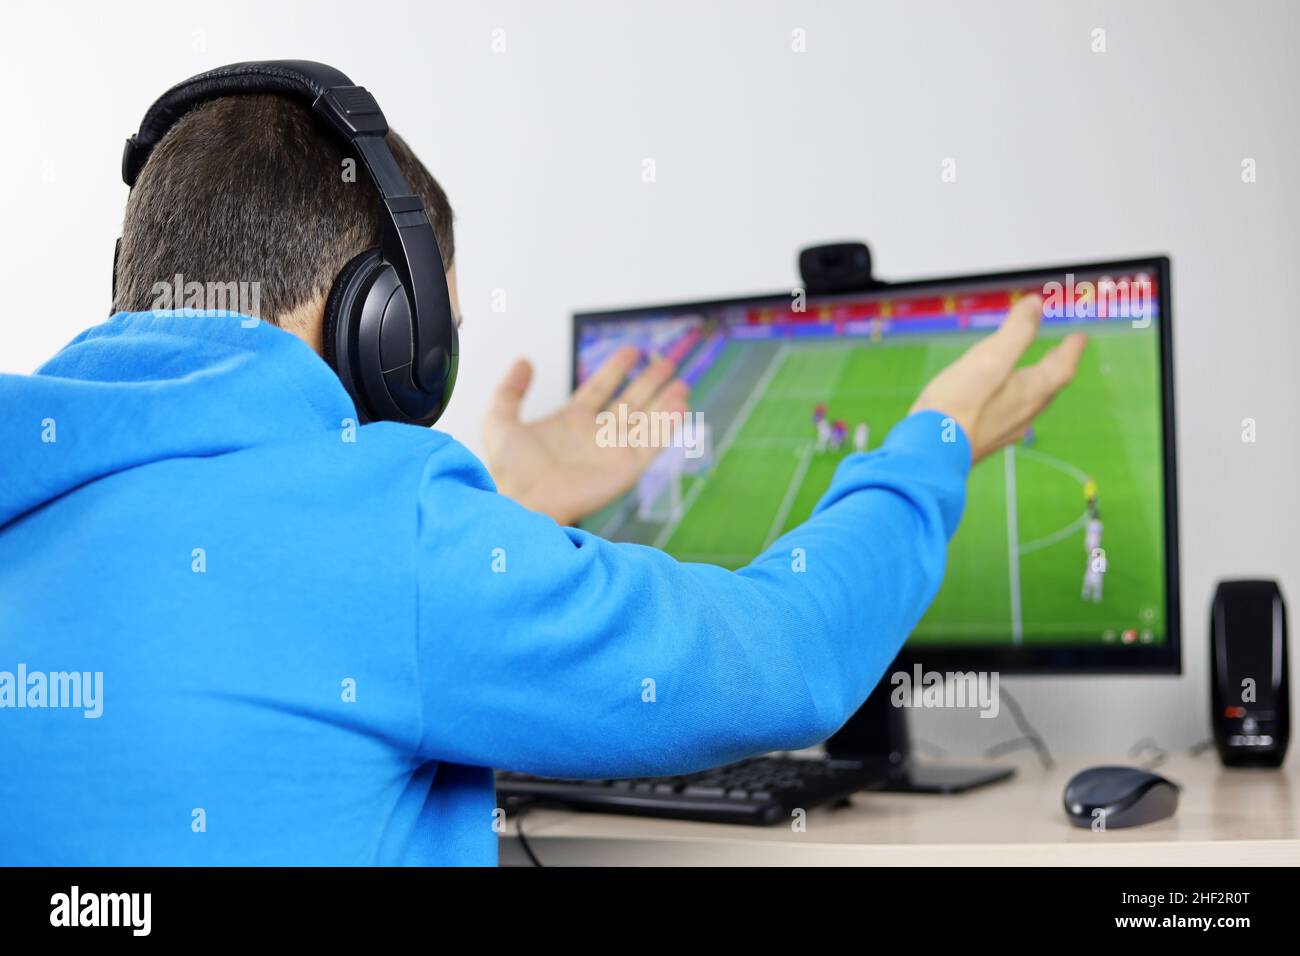 Mann, der Fußballspiel auf dem Display des Desktop-PCs ansieht. Enttäuschter oder schockierter Fan, der sich Sorgen um seine Lieblingssportmannschaft gemacht hat Stockfoto